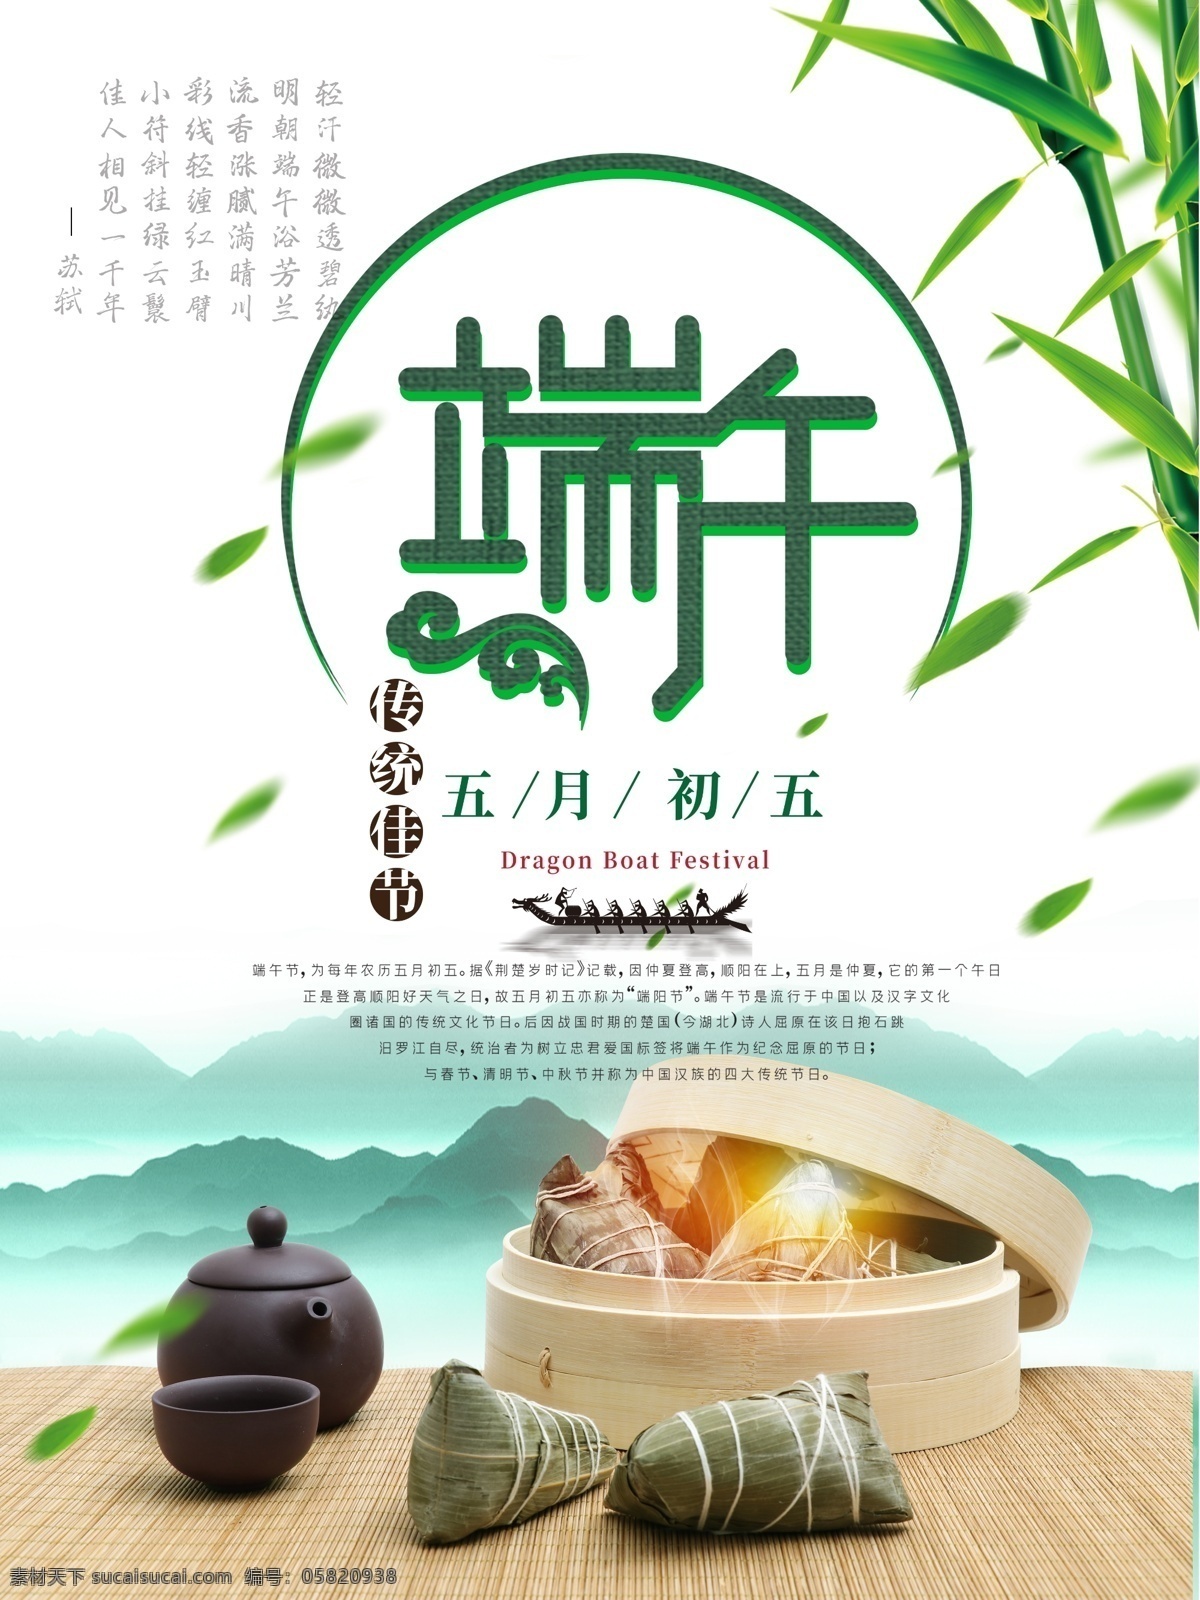 原创 端午节 传统 佳节 海报 五月初五 端午 粽子 茶壶 龙舟